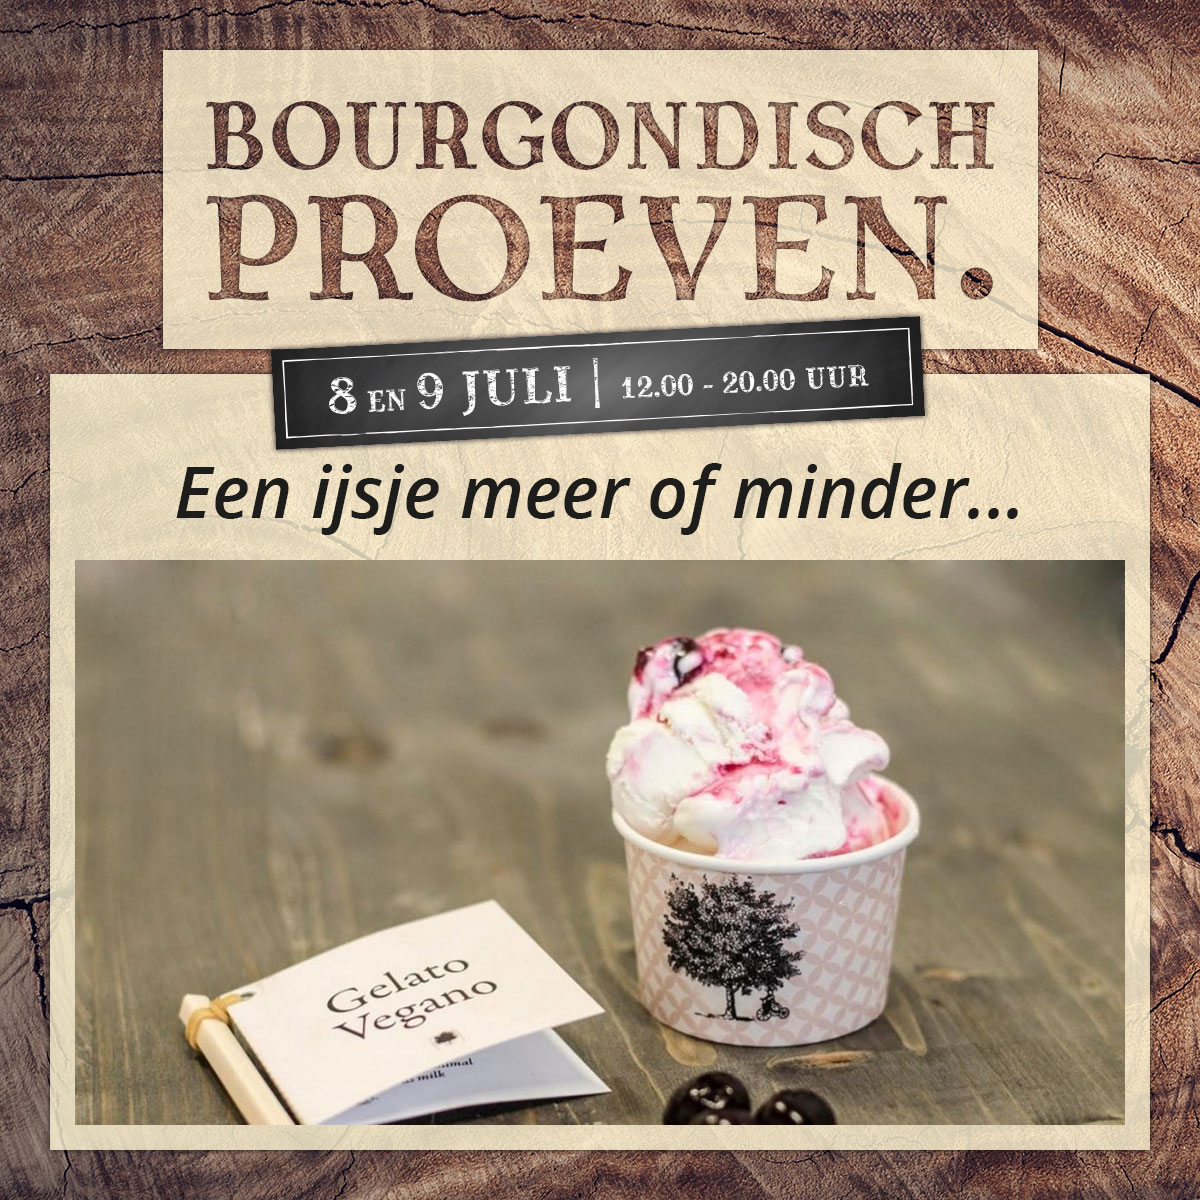 De Bourgondiër – Bourgondisch Proeven. – Facebookbericht – Een-ijsje-meer-of-minder…